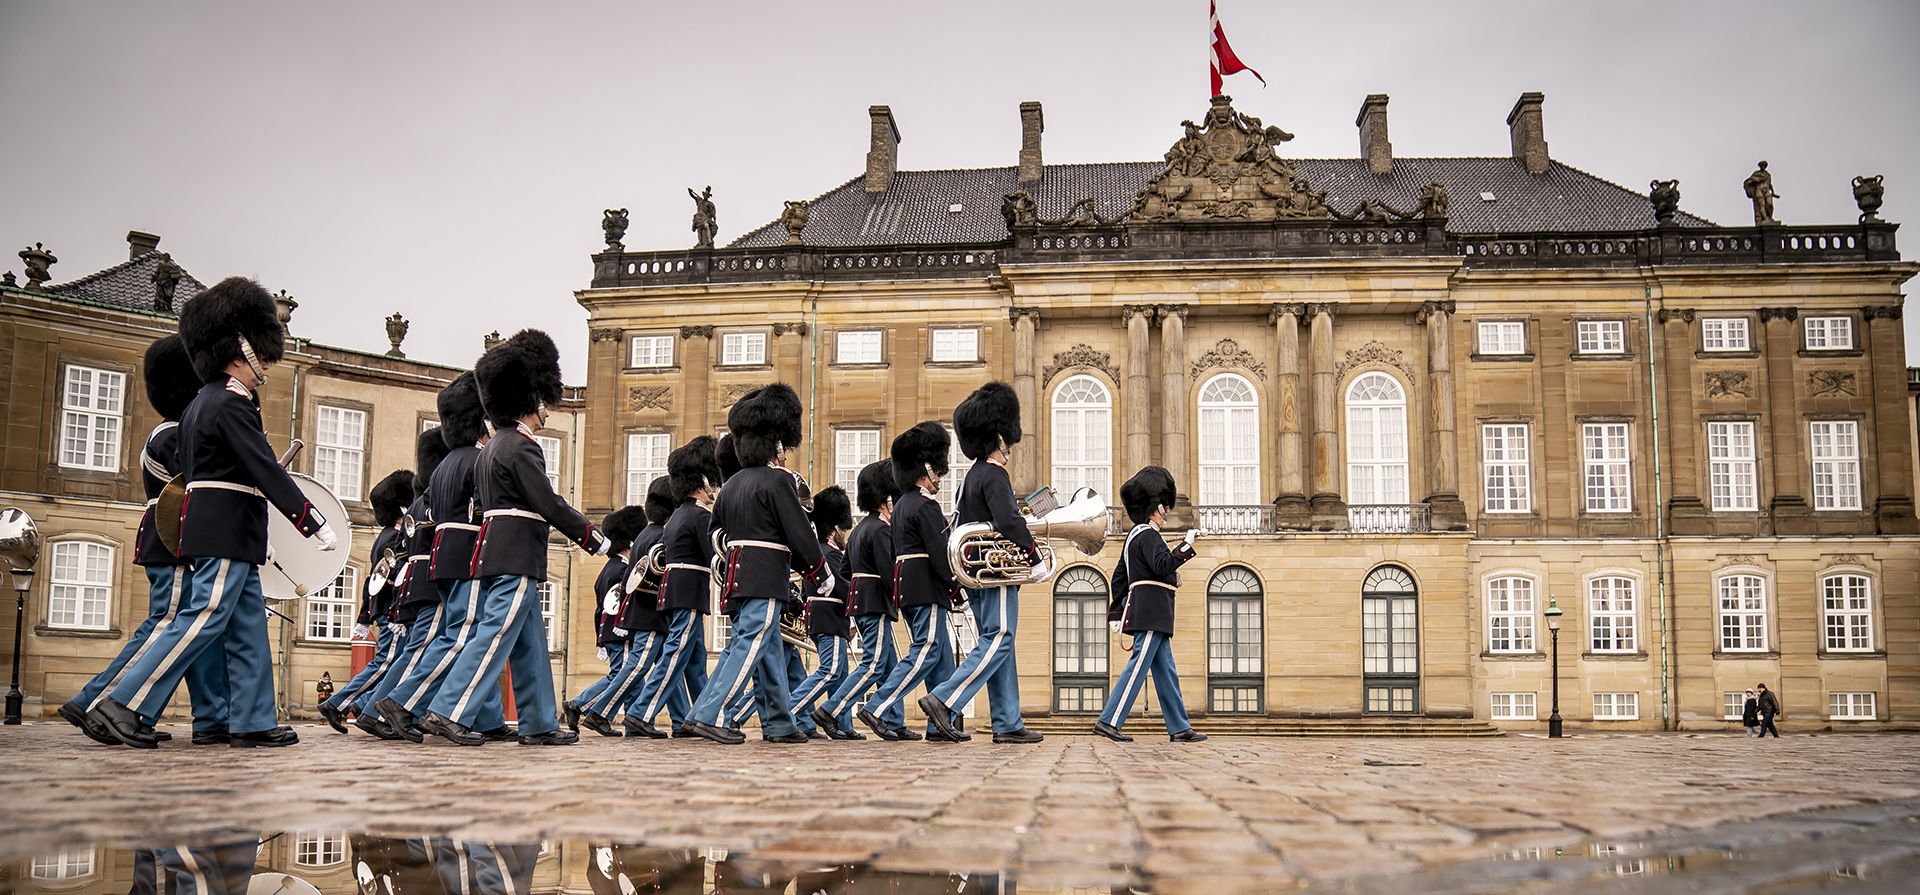 Las banderas ondean a media asta en el Castillo de Amalienborg del Palacio de la Reina en Copenhague, Dinamarca, el miércoles 11 de enero de 2023 para honrar la muerte del ex rey de Grecia, Costantine.  (Mads Claus Rasmussen/Ritzau Scanpix vía AP)